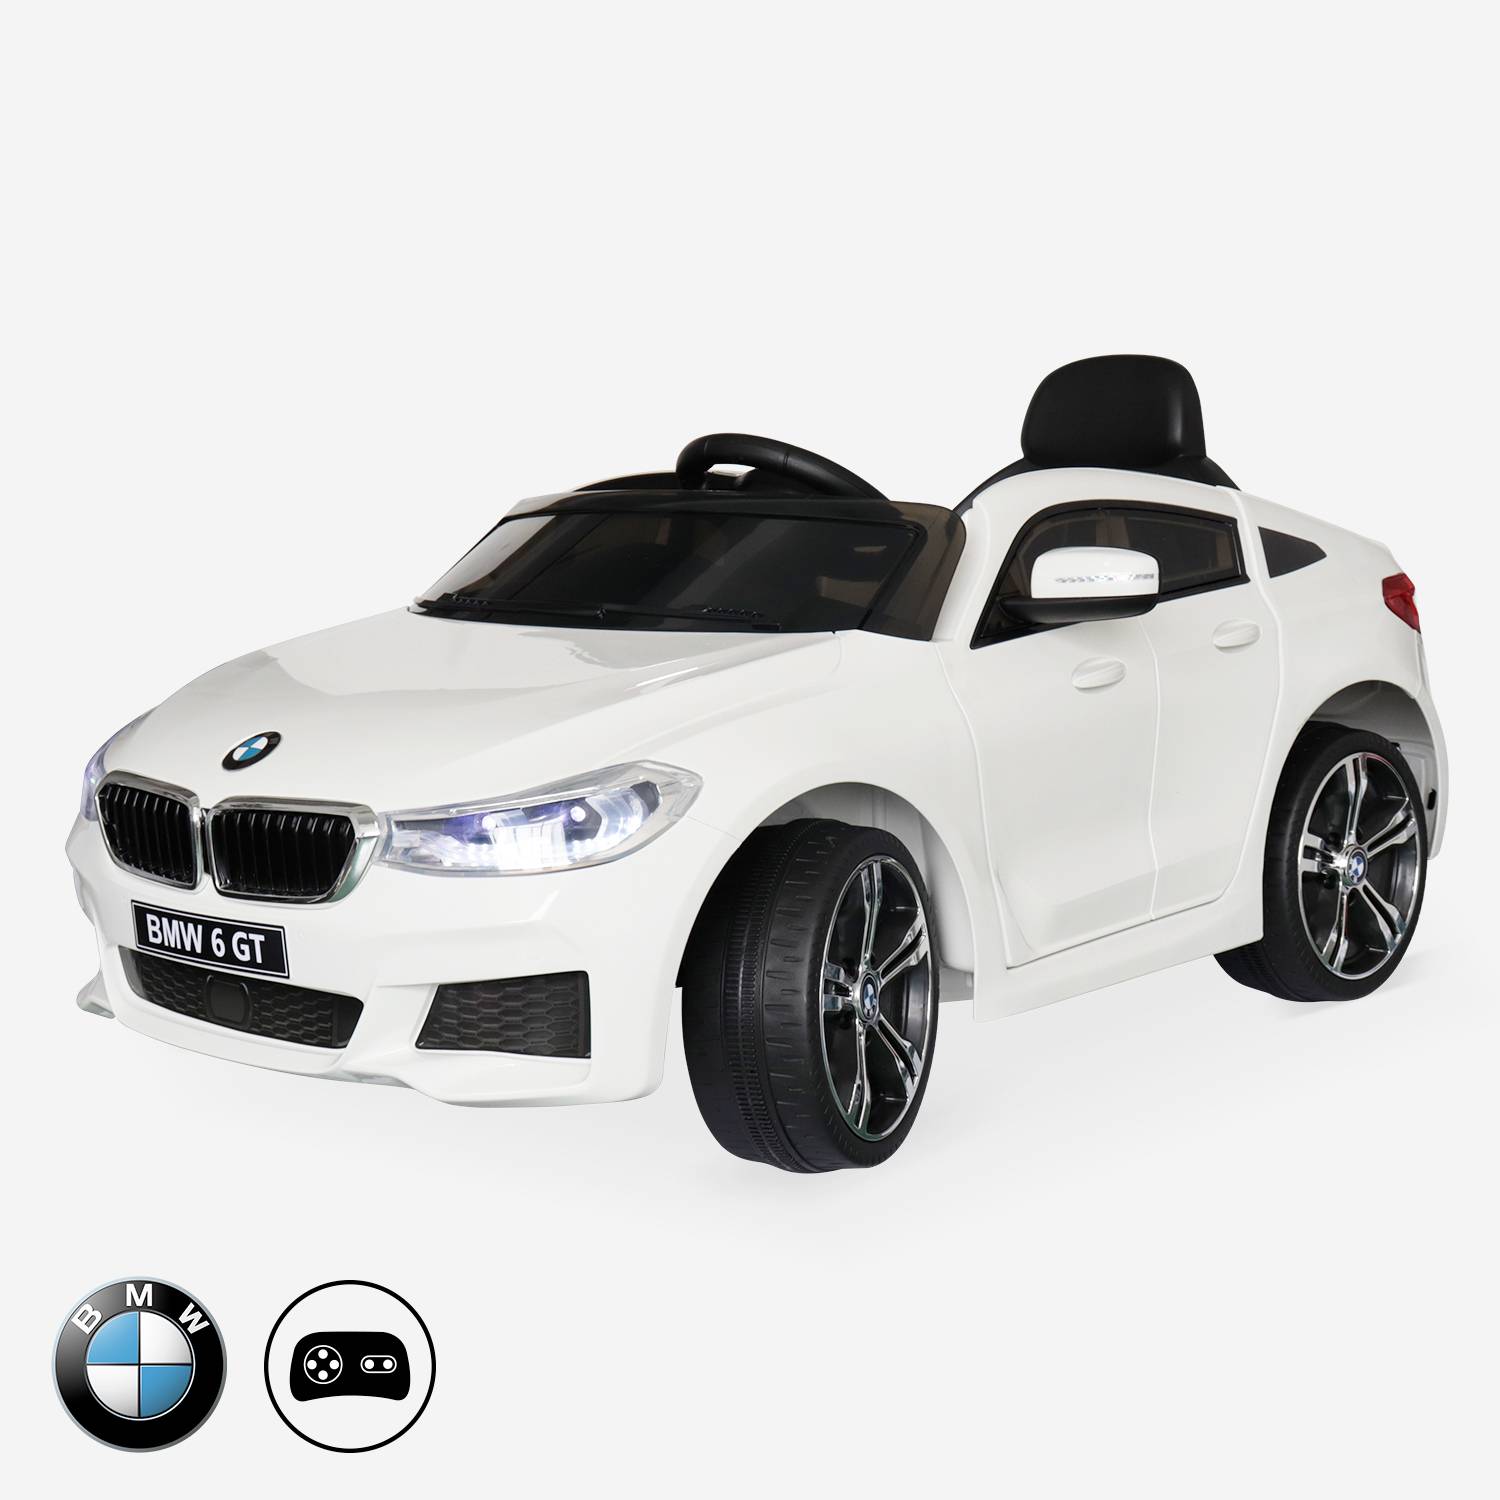 BMW Serie 6 GT Gran Turismo Branco ,carro eléctrico infantil 12V 4 Ah, 1 lugar , con autorradio y controle remoto. Photo1